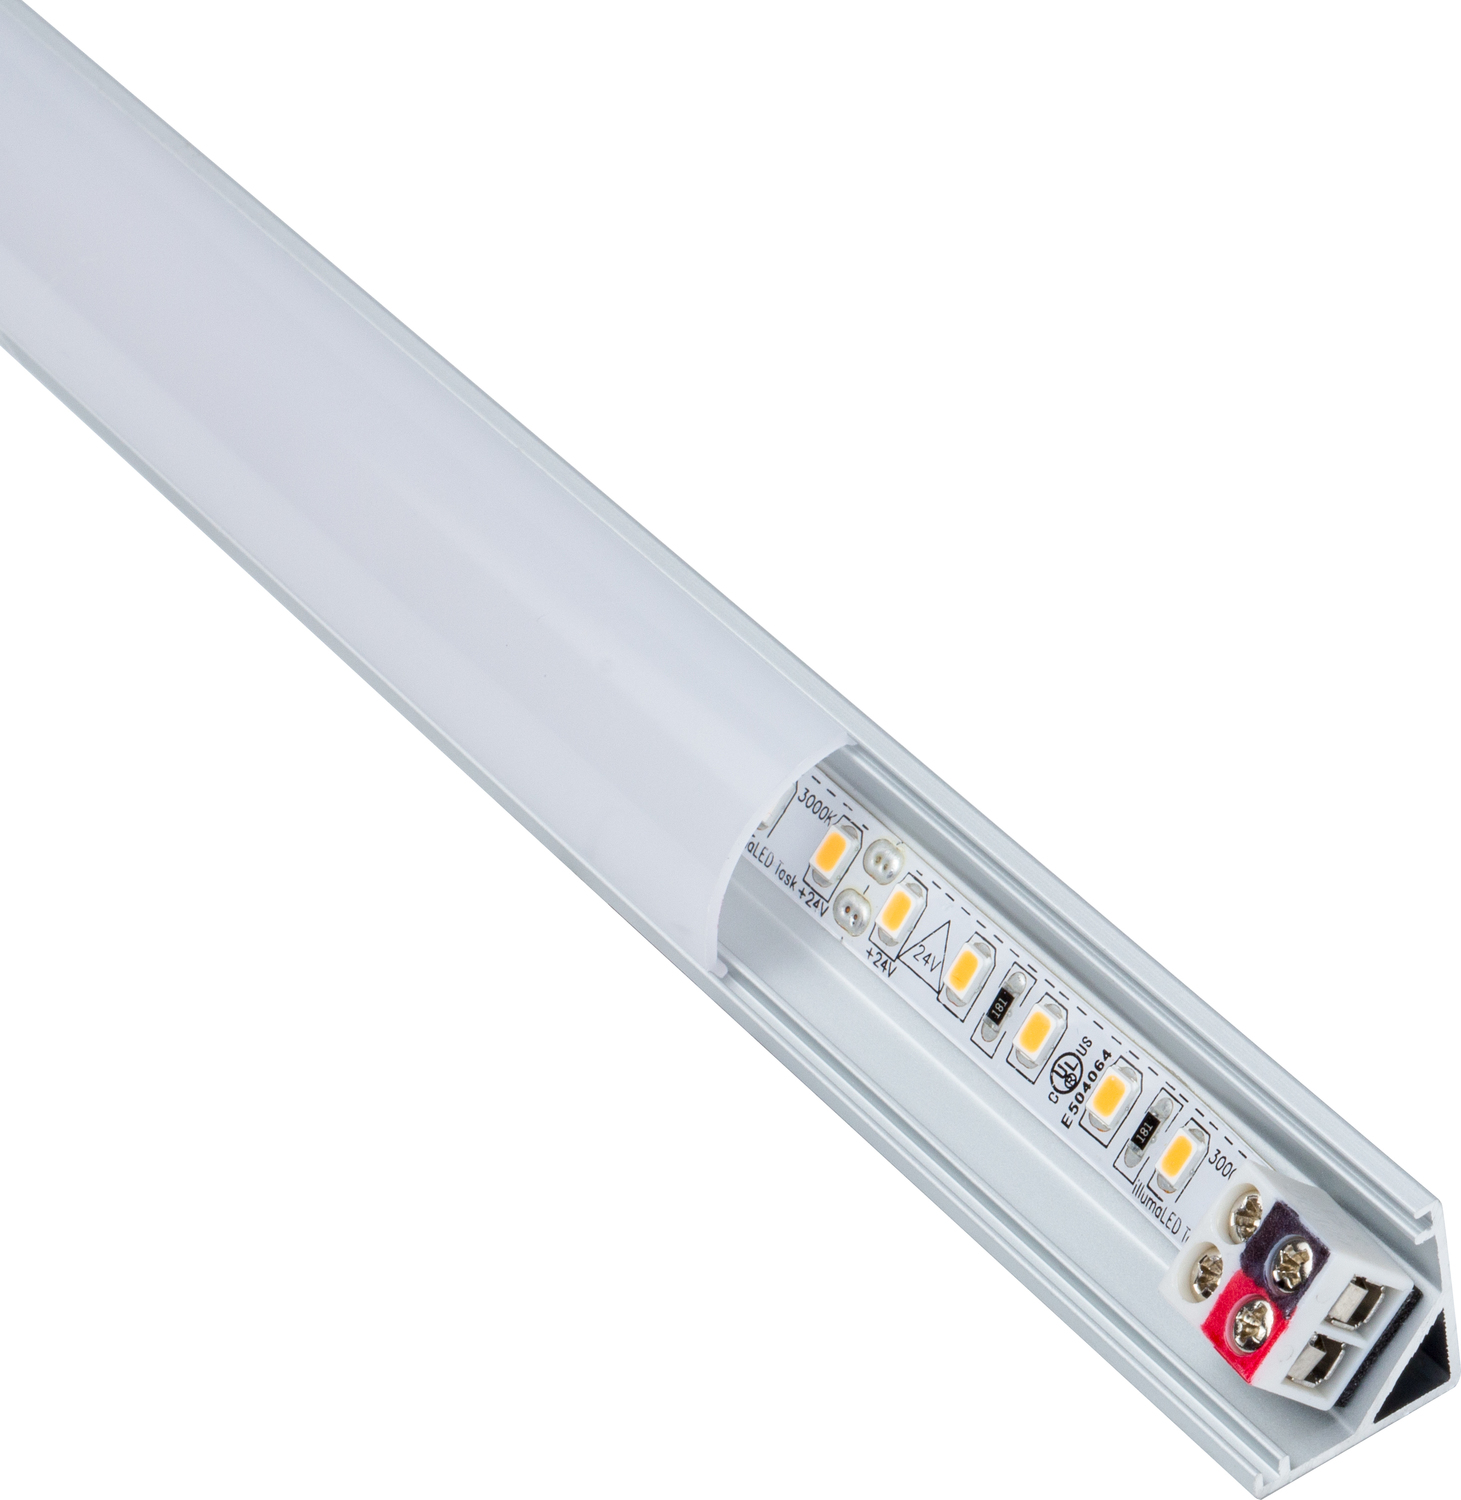 led strip lights in the kitchen Task Lighting Linear Fixtures;Single-white Lighting Aluminum